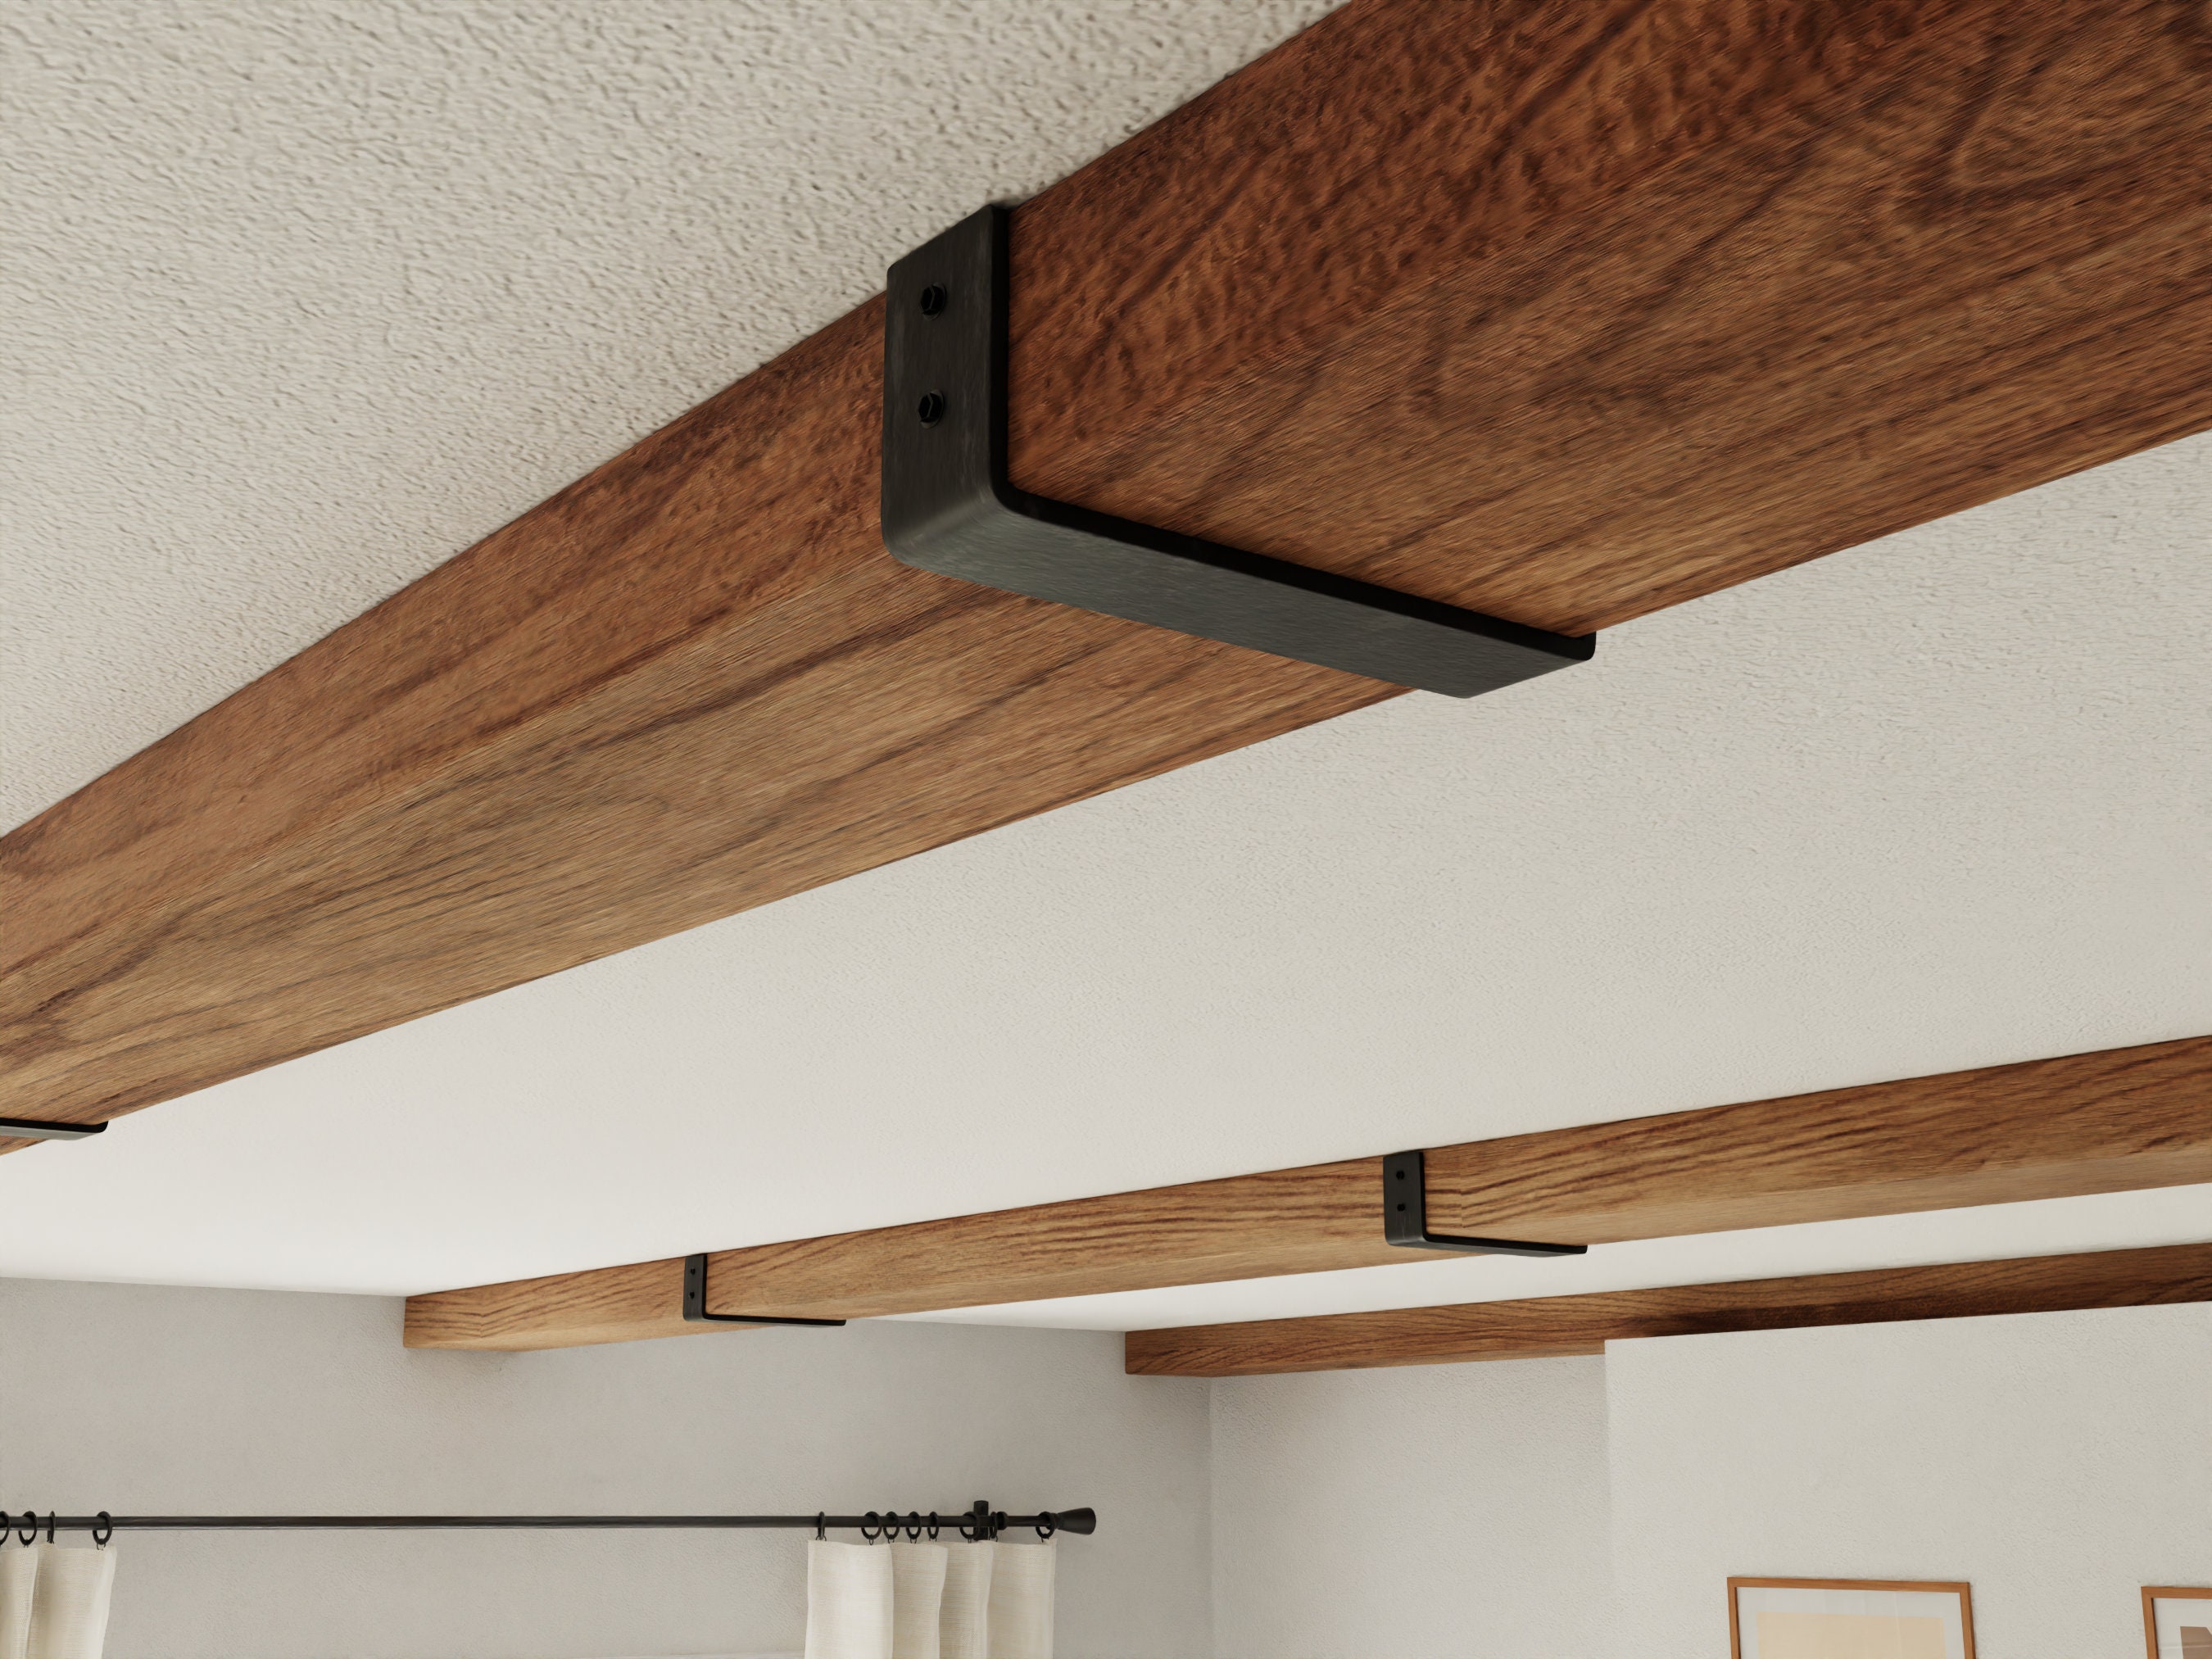 Soportes de barra de cortina montados en el techo, soporte de techo  resistente para soporte de